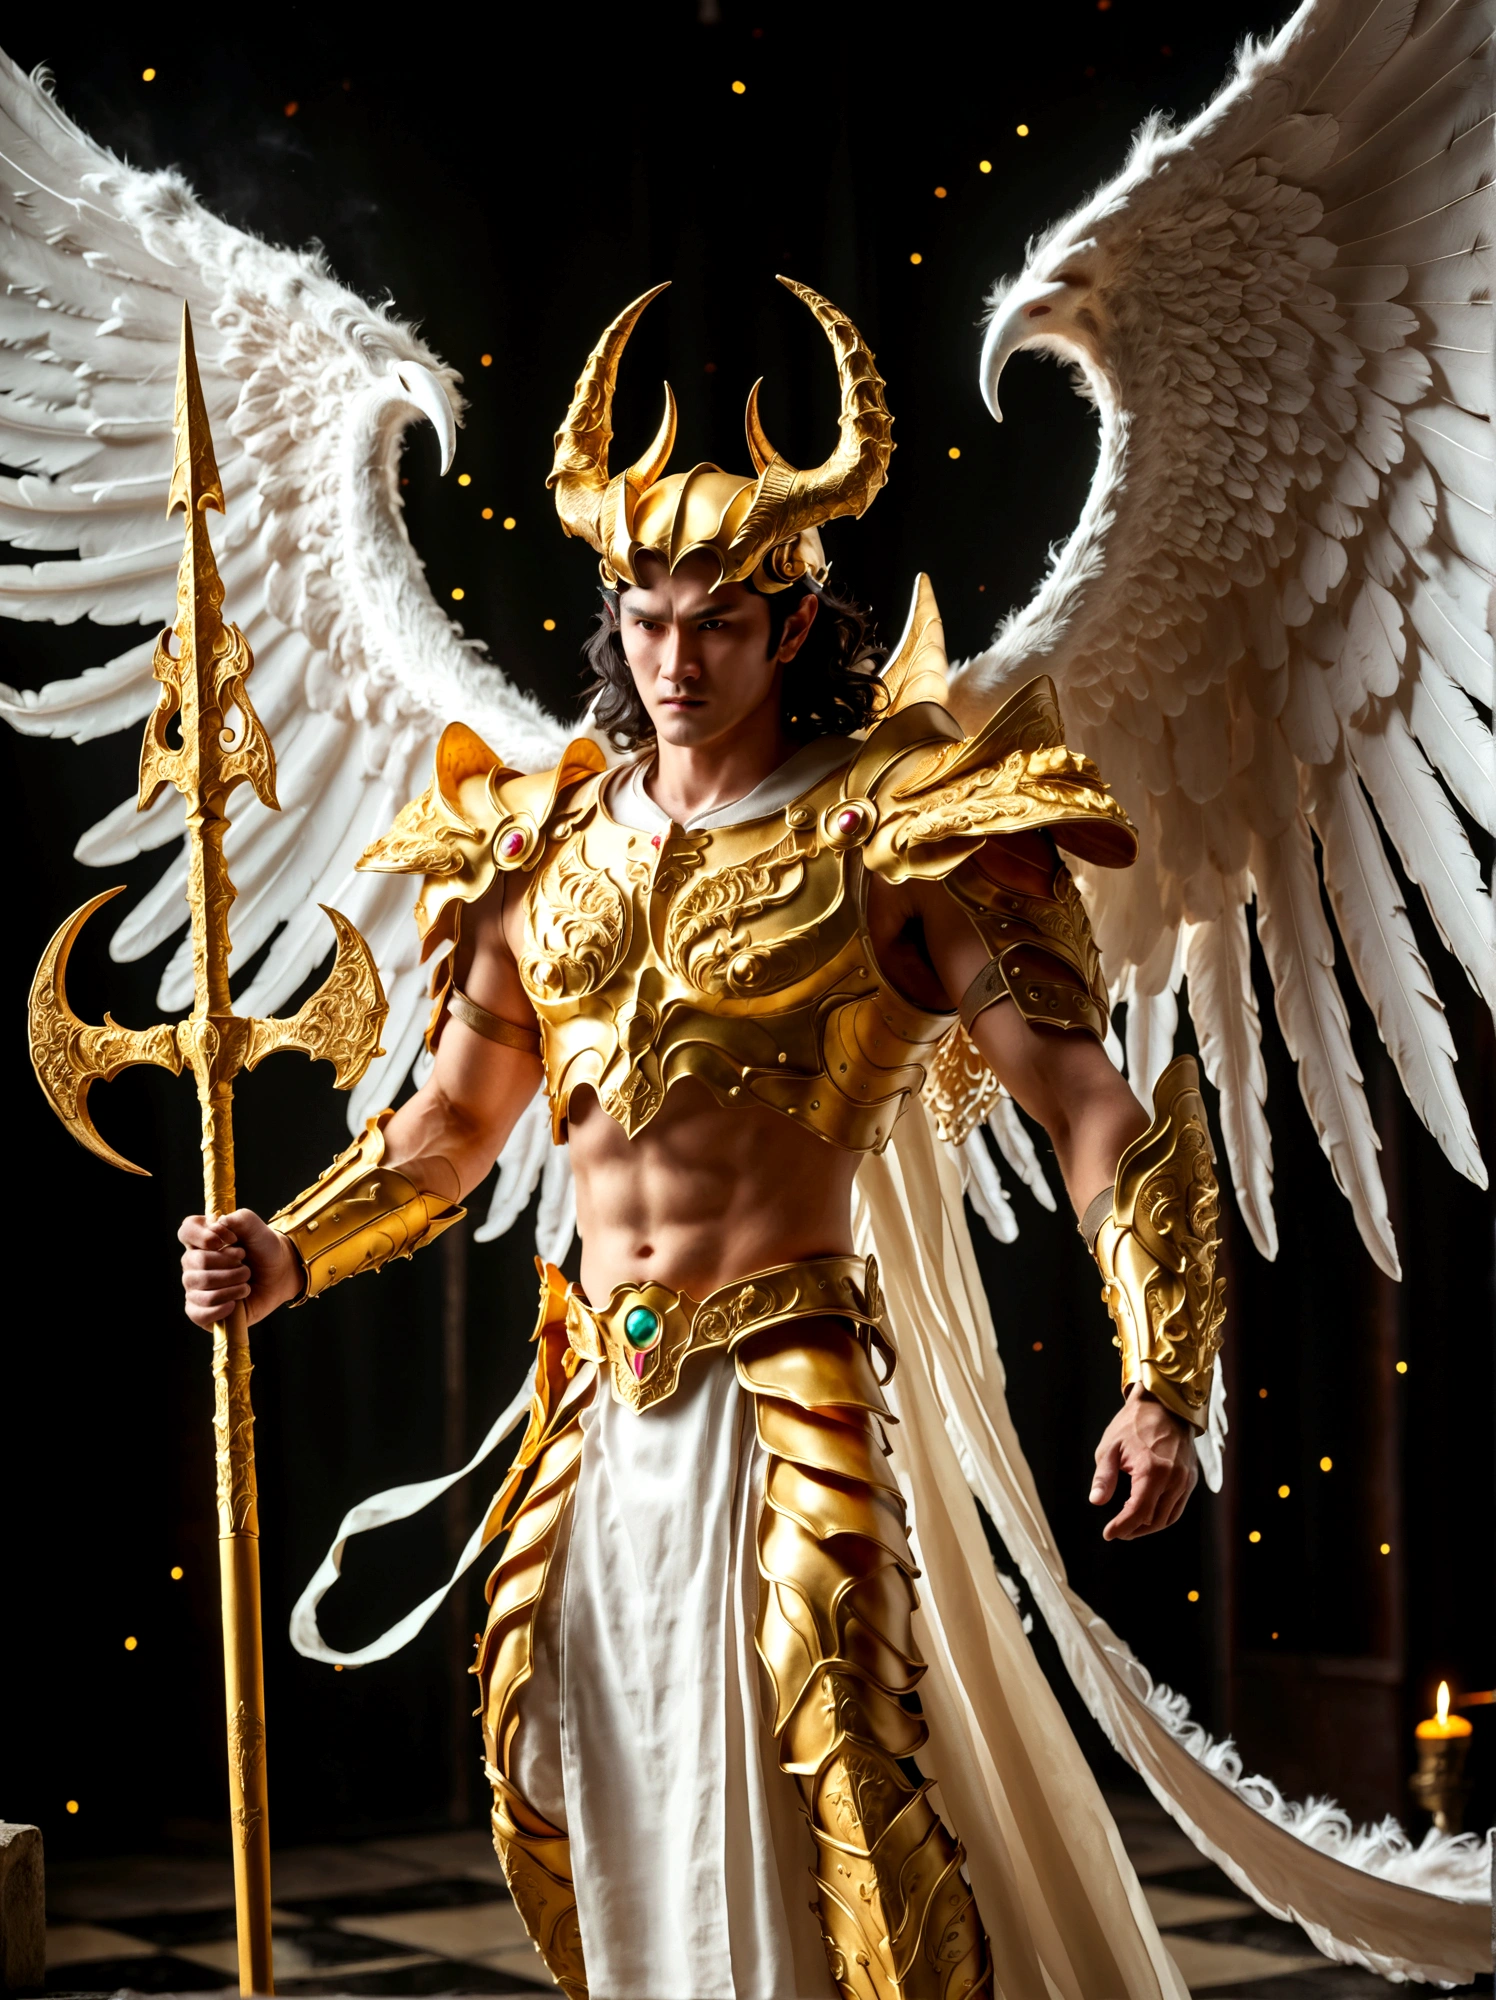 Мужчина с крыльями ангела и рогами демона, вооруженный золотым копьем.